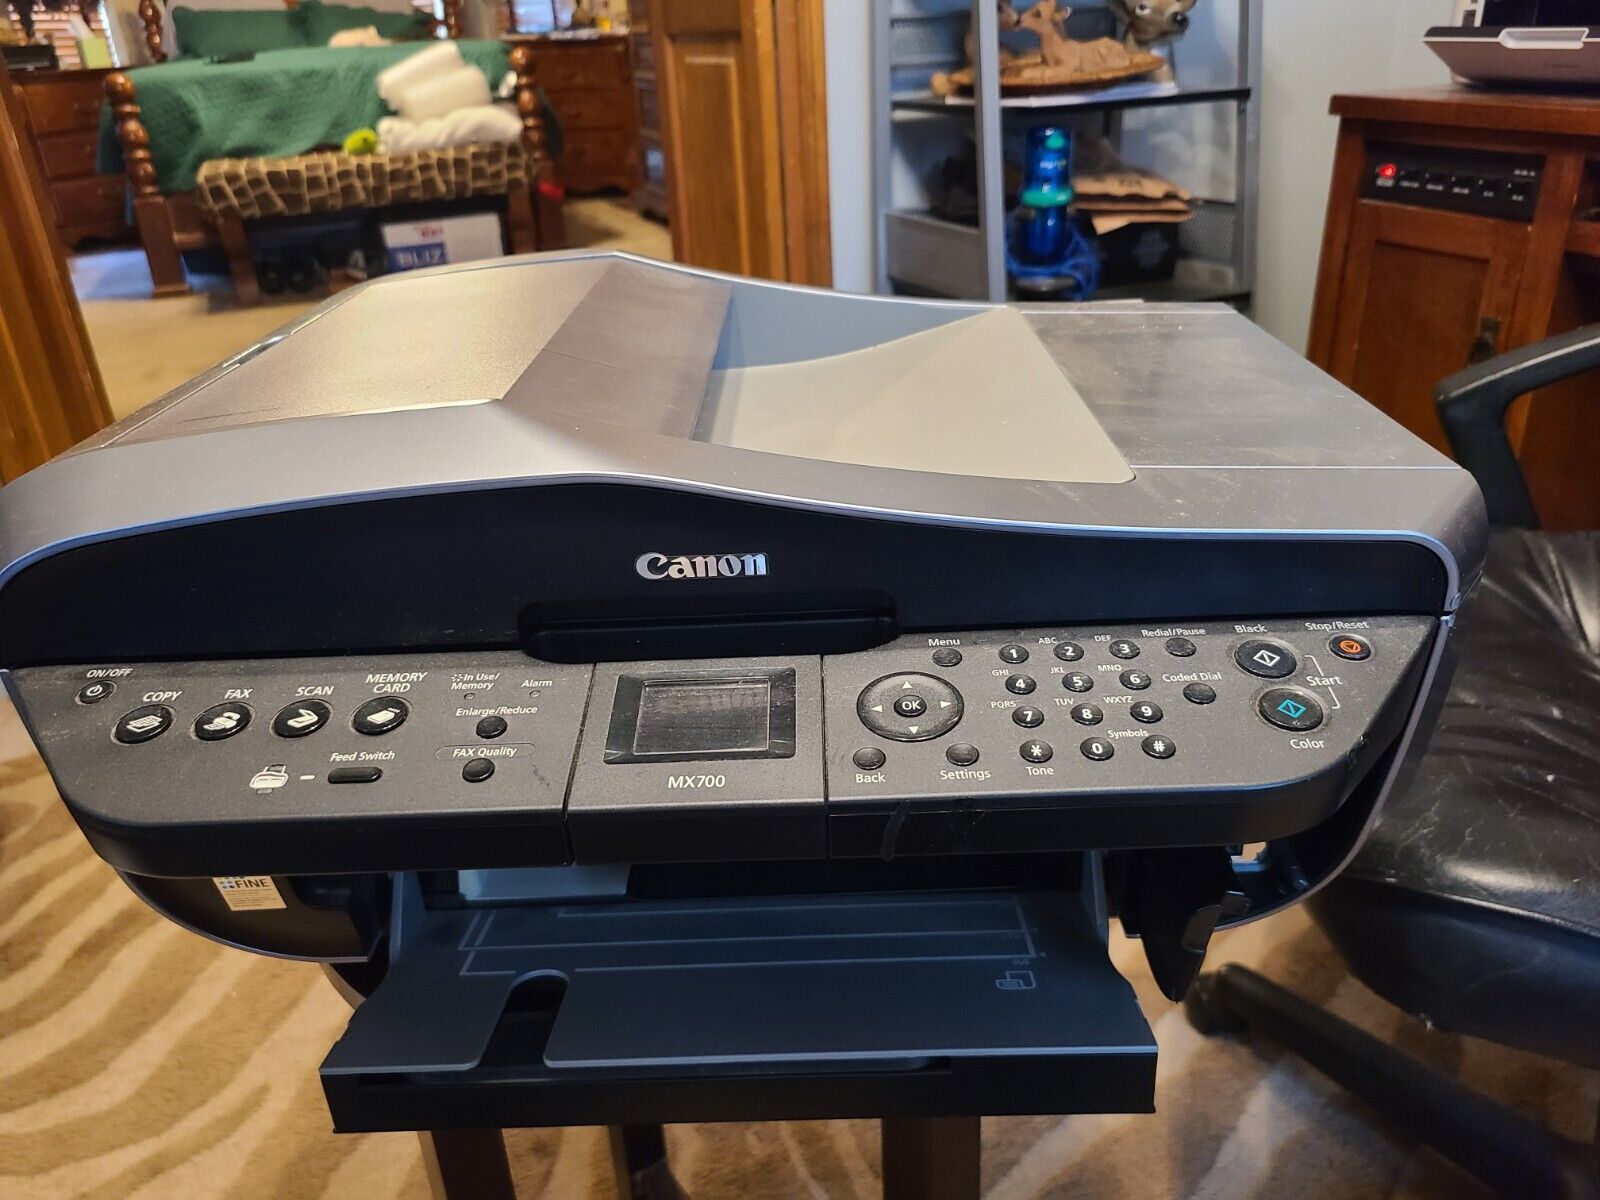 Canon PIXMA MX700 All-In-One Inkjet Printer